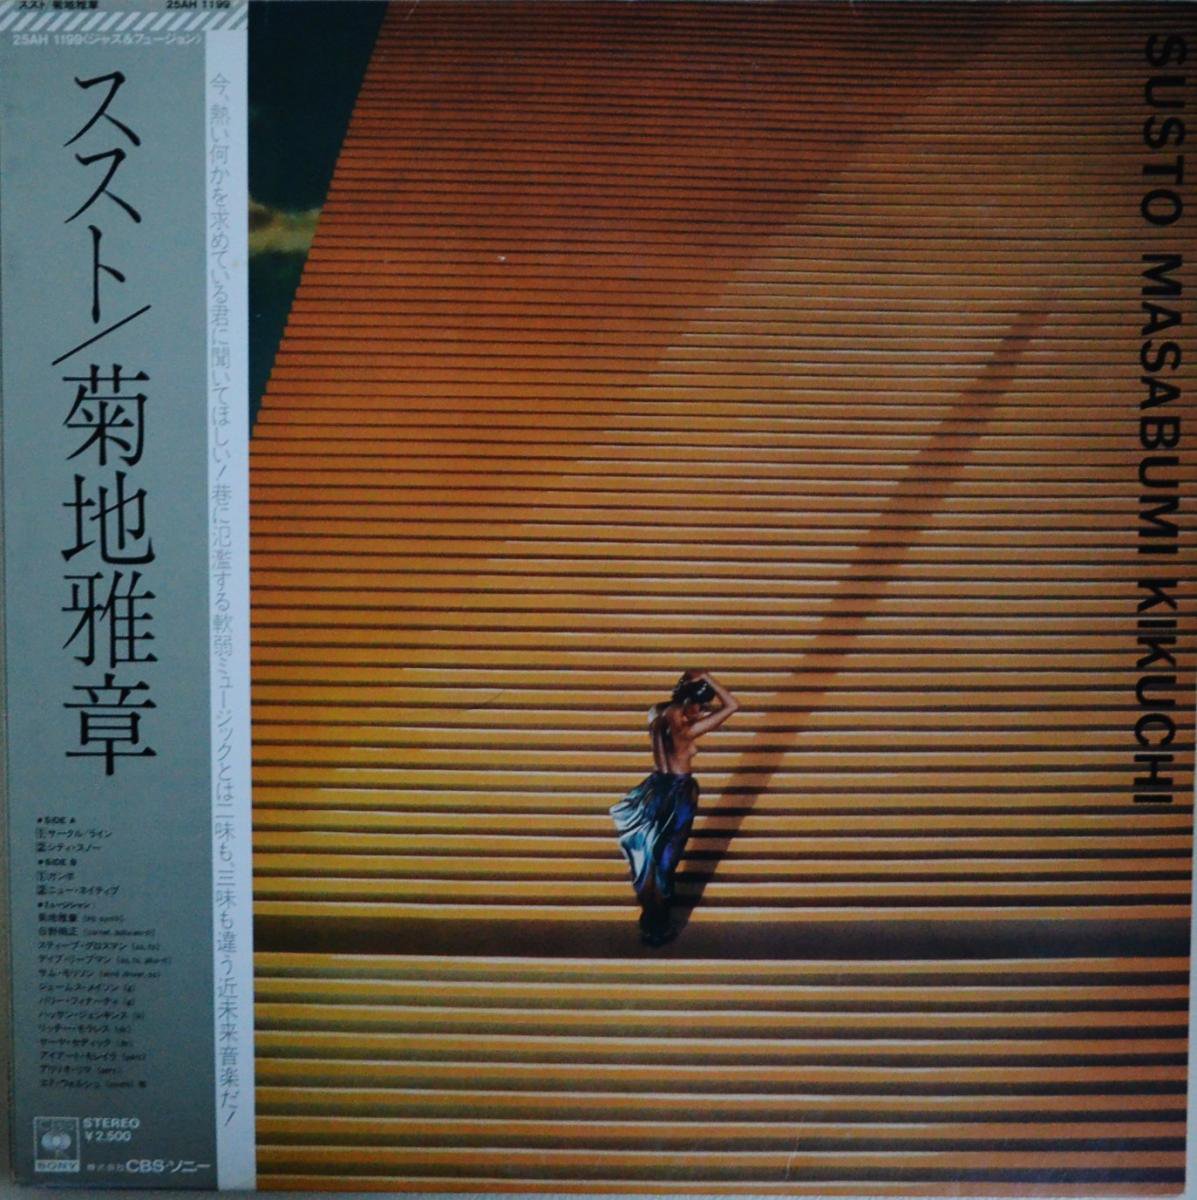 菊地雅章 MASABUMI KIKUCHI / ススト SUSTO (LP)